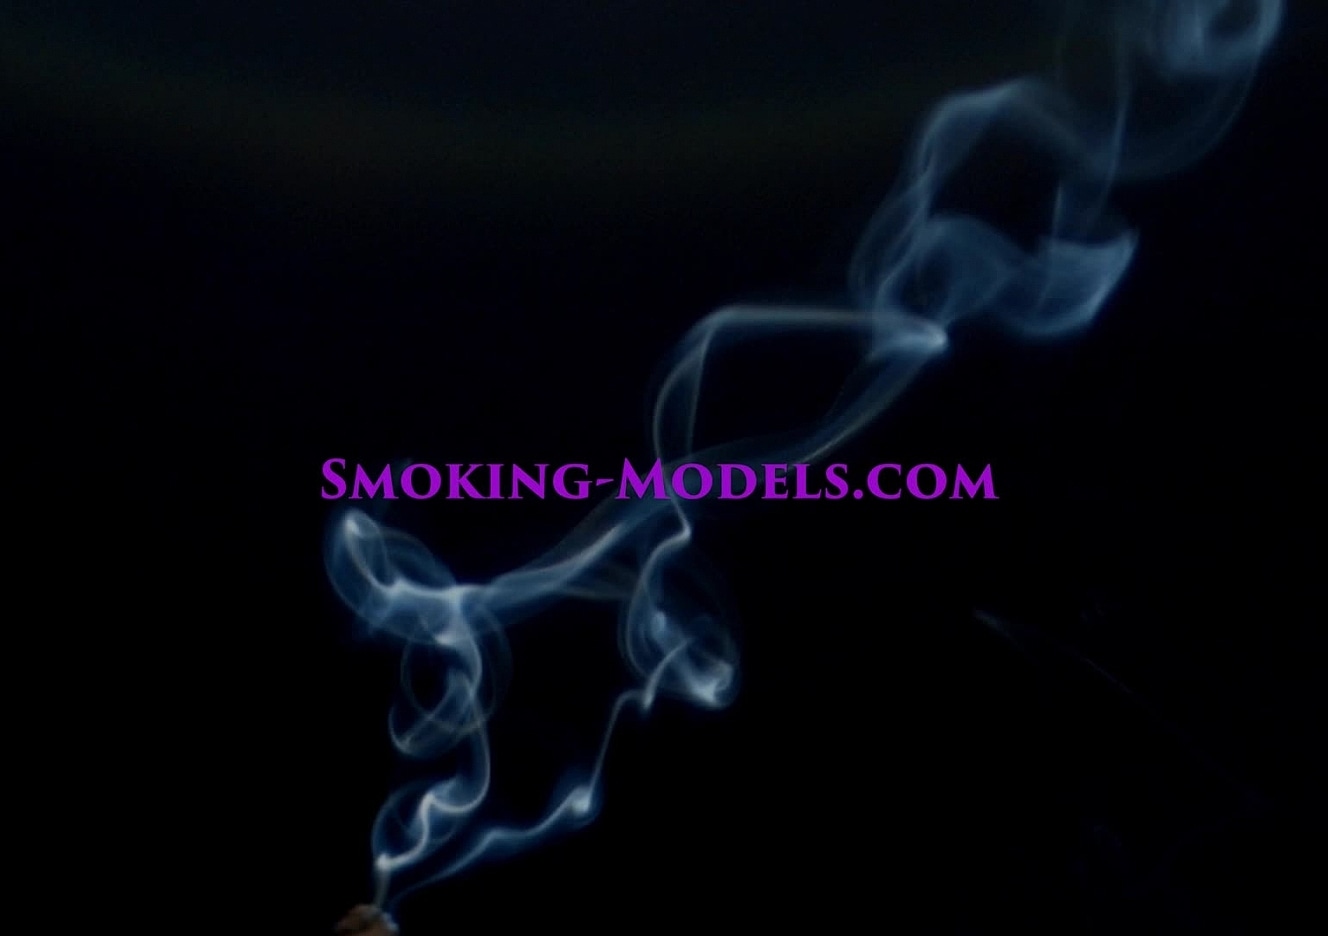 content/SMOKINGM-V-2988/0.jpg